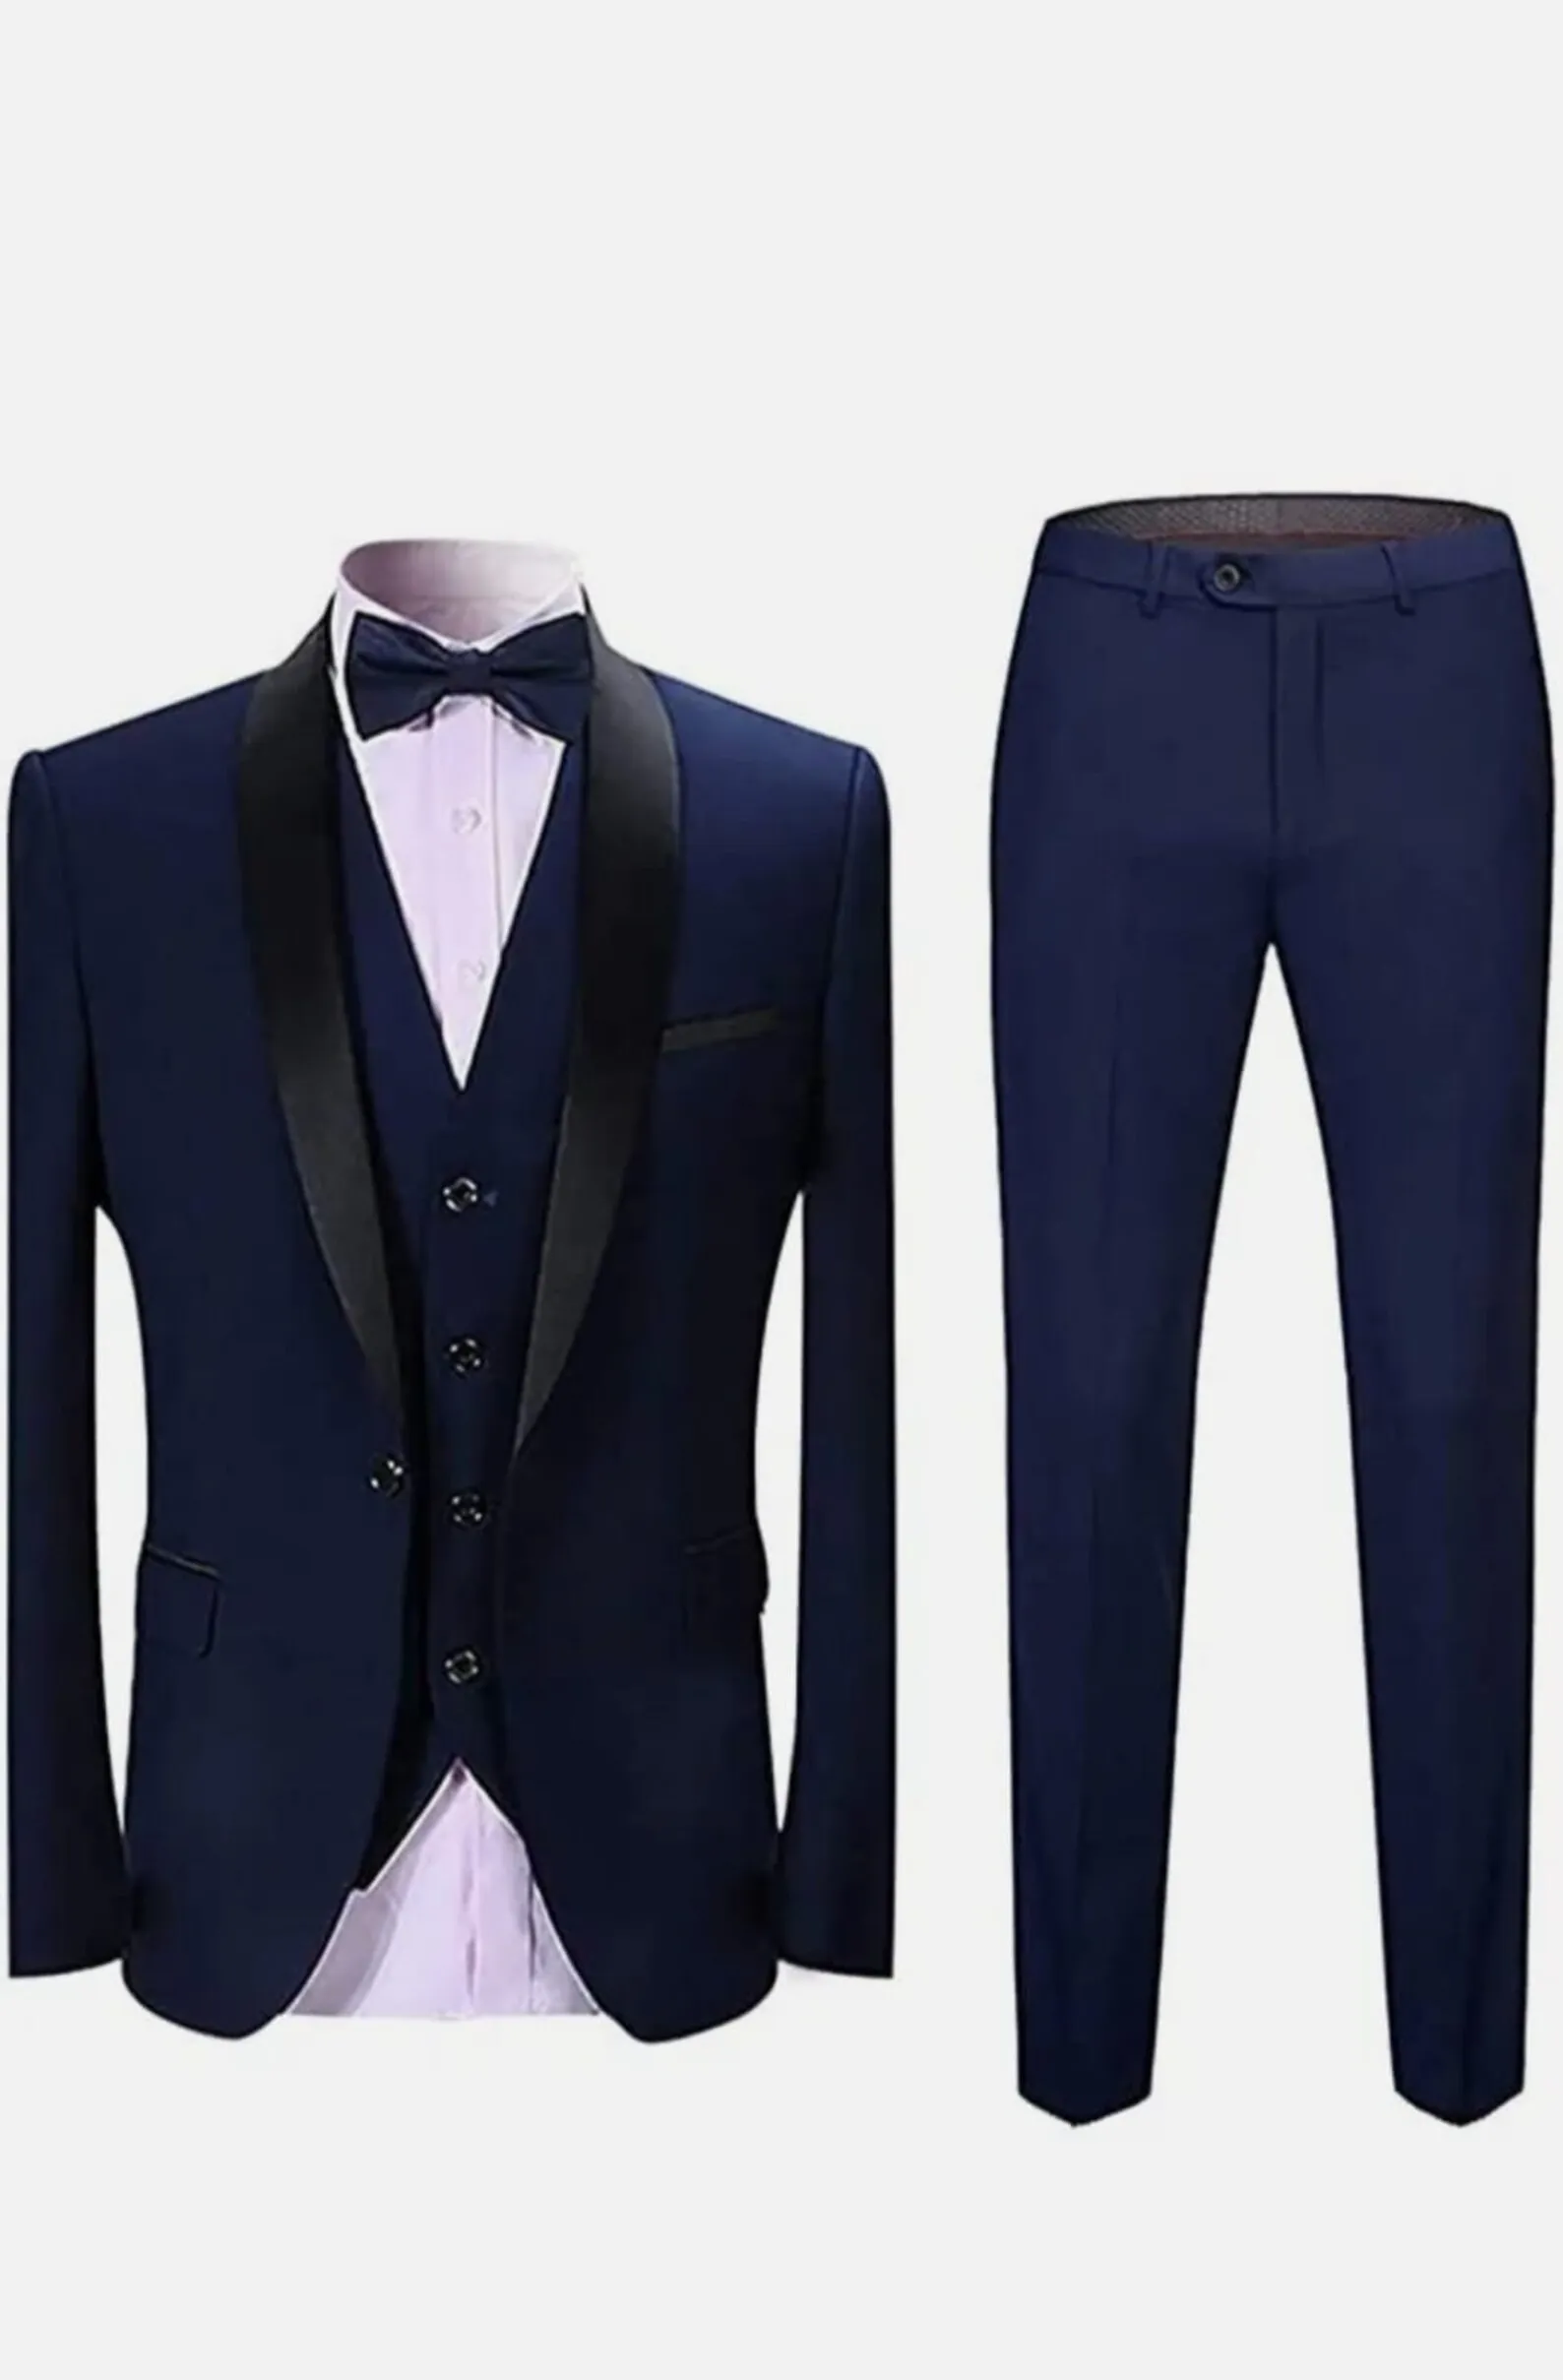 Classic Suits For Men Slim Fit Wedding Groom Tuxedo Business Blazer Banquet 3 Pieces Set Jacket+Vest+Pants Trajes De Hombre